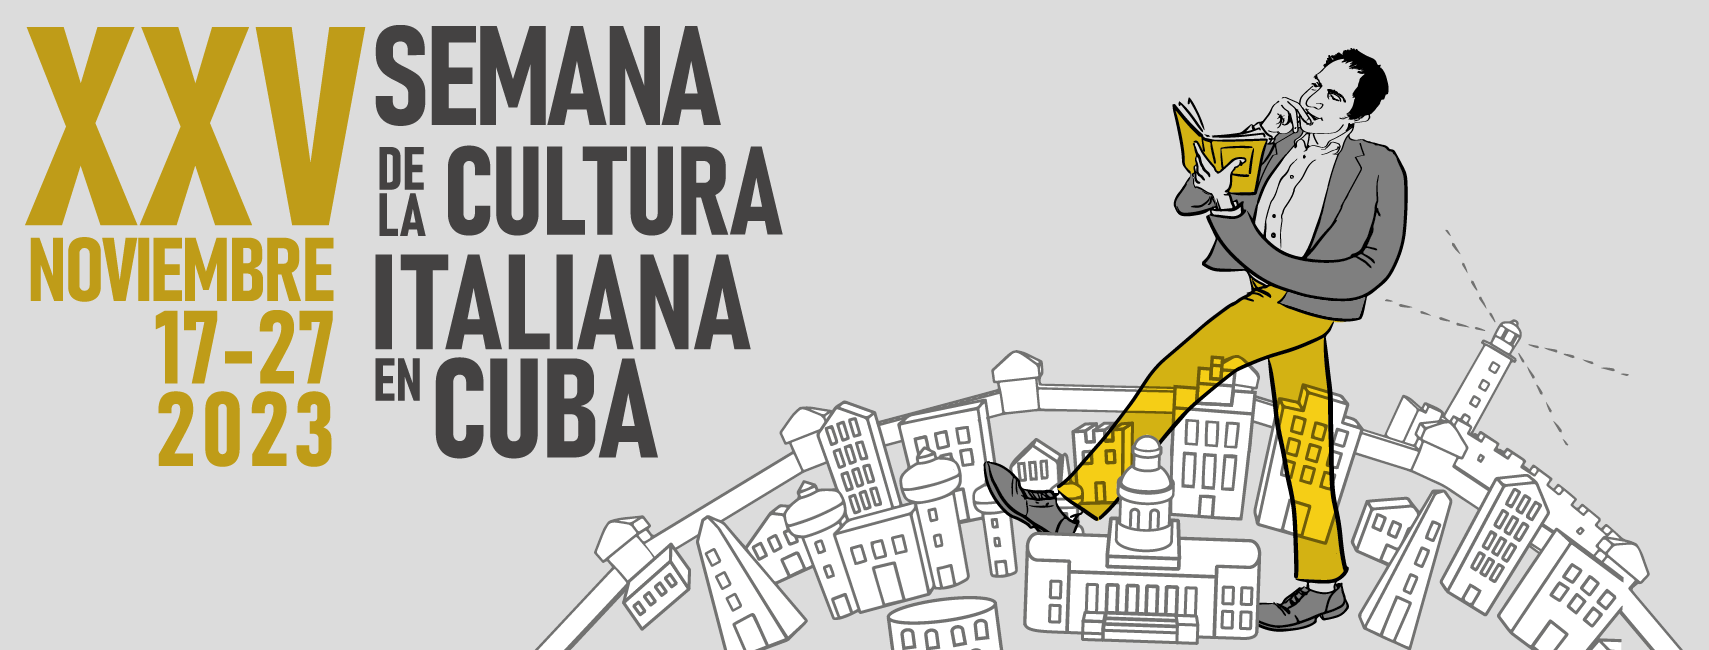 semana de la cultura italiana en Cuba